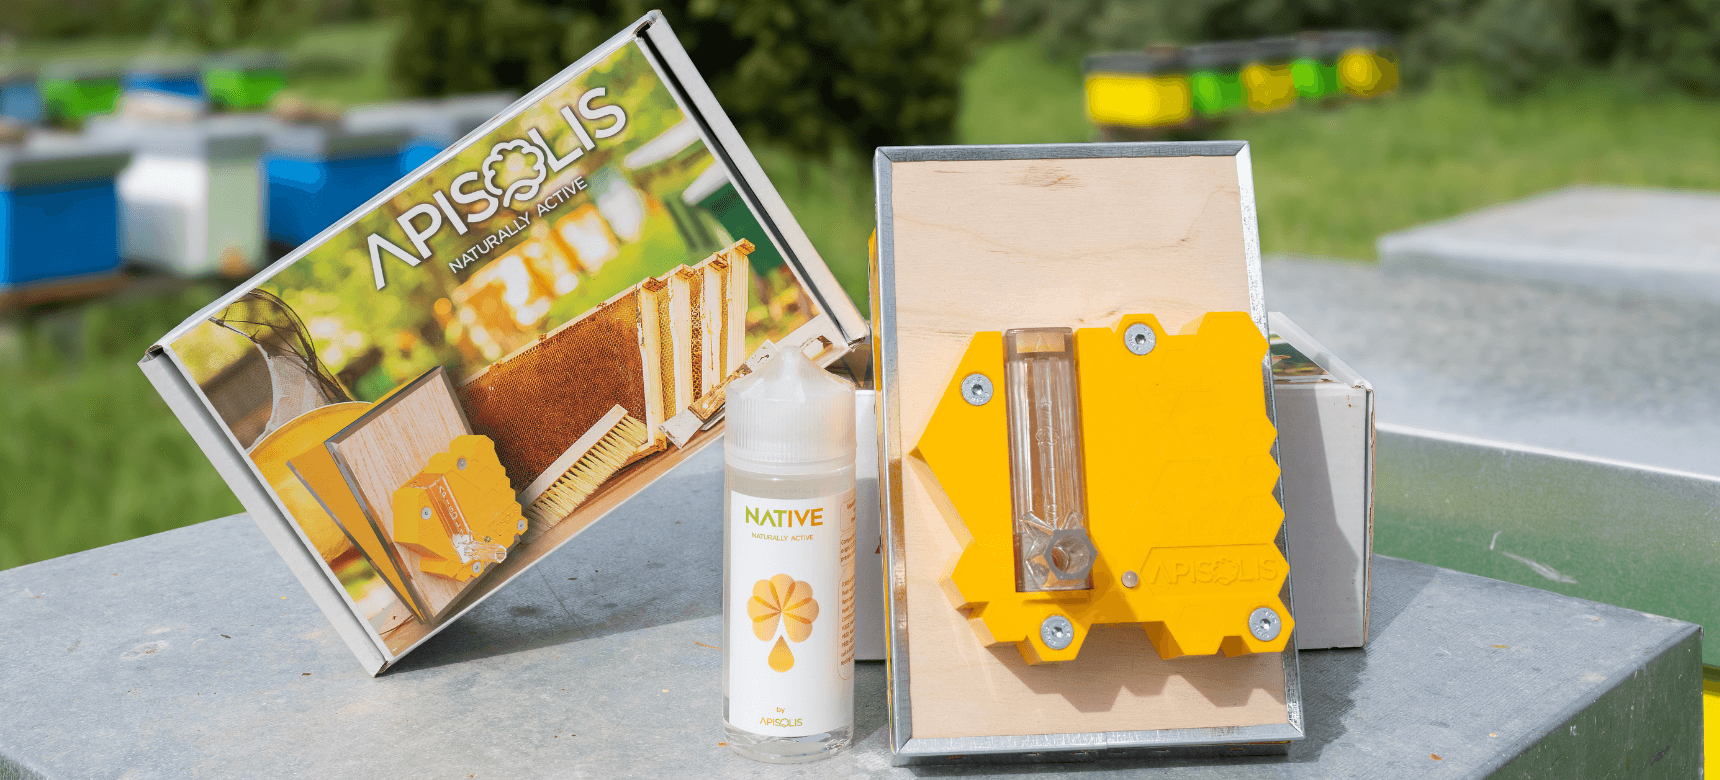 vaporisateur apisolis et native pour apiculture